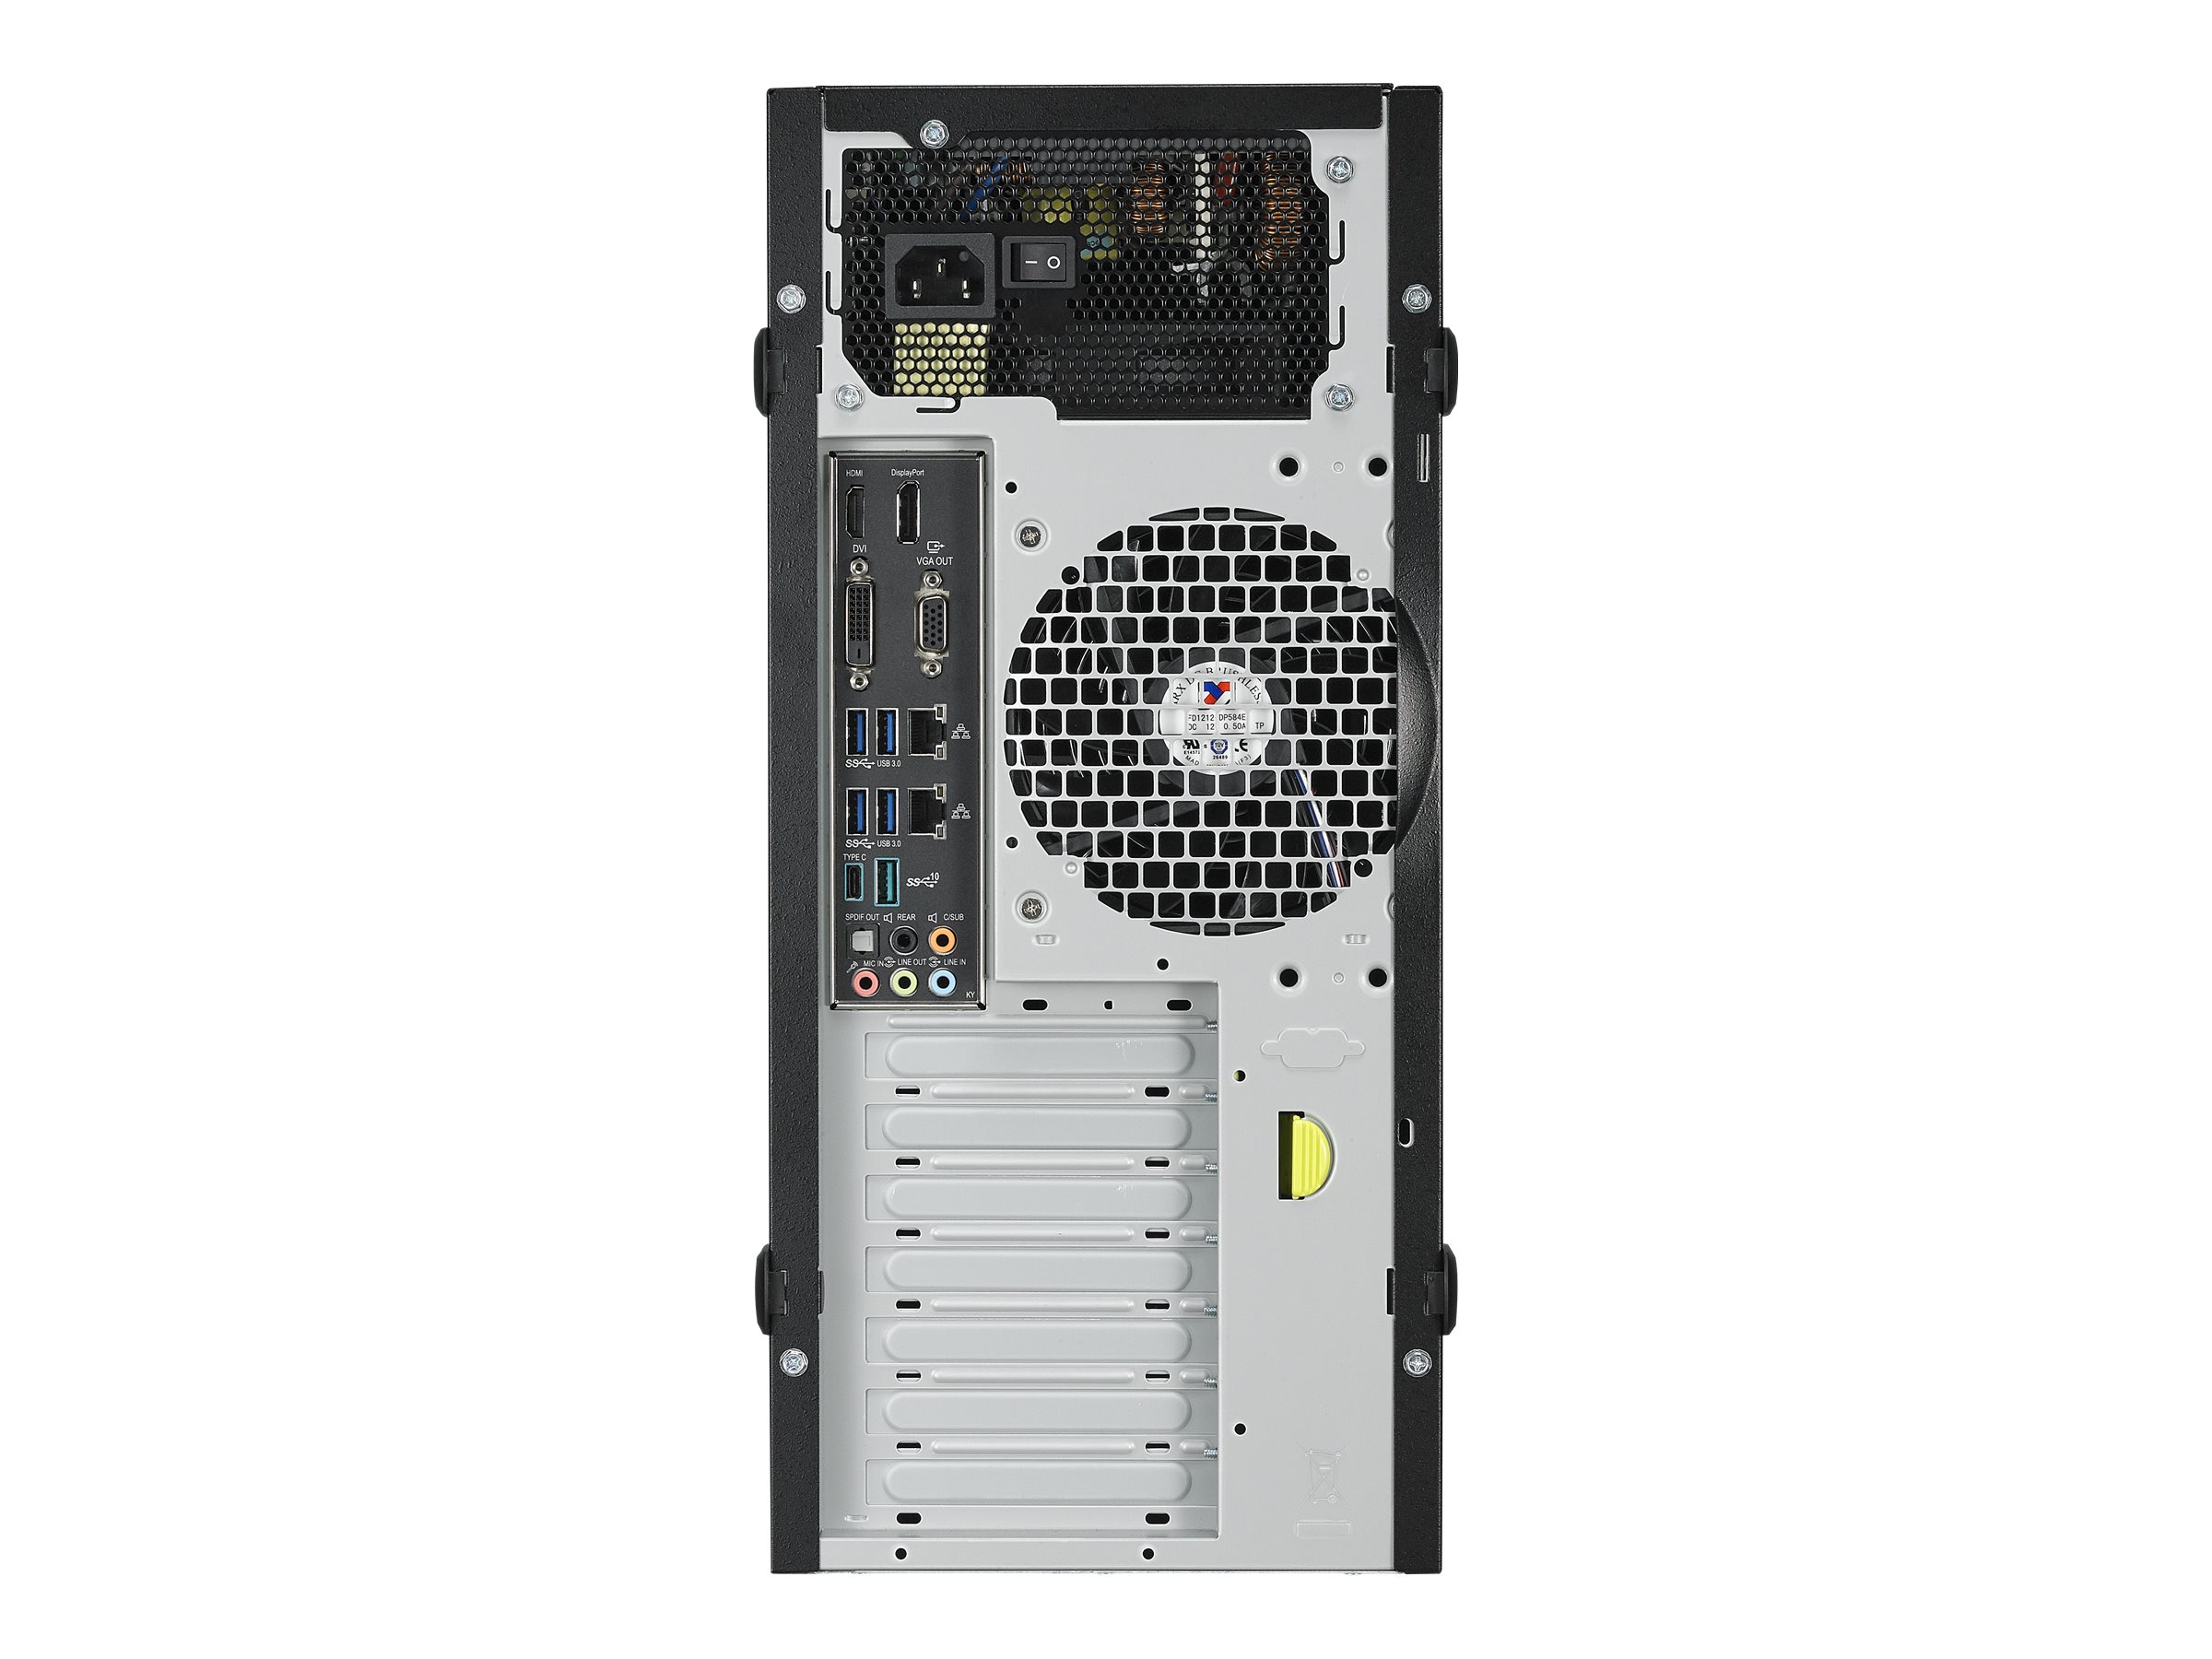 ASUS E500 G5-M3960 - Tour - 1 x Core i5 8500 / jusqu'à 4.1 GHz - RAM 8 Go - HDD 1 To - graveur de DVD - Quadro P620 - Gigabit Ethernet - Win 10 Pro - moniteur : aucun - 90SF00Q1-M03960 - Ordinateurs de bureau